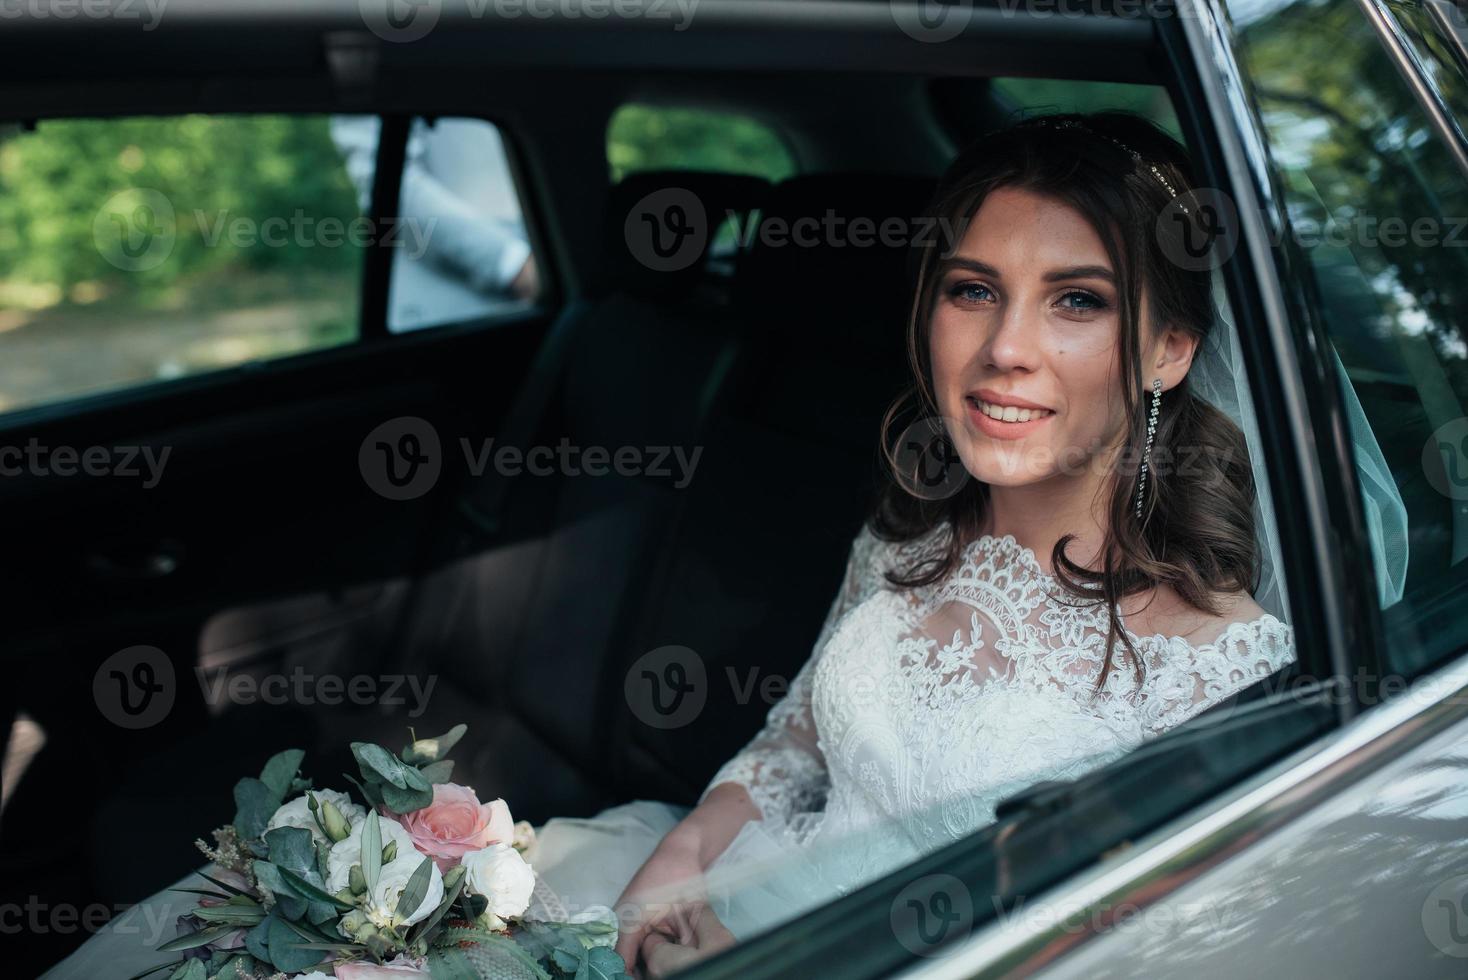 Hochzeitsfoto der Braut, die im Auto mit einem Blumenstrauß sitzt foto